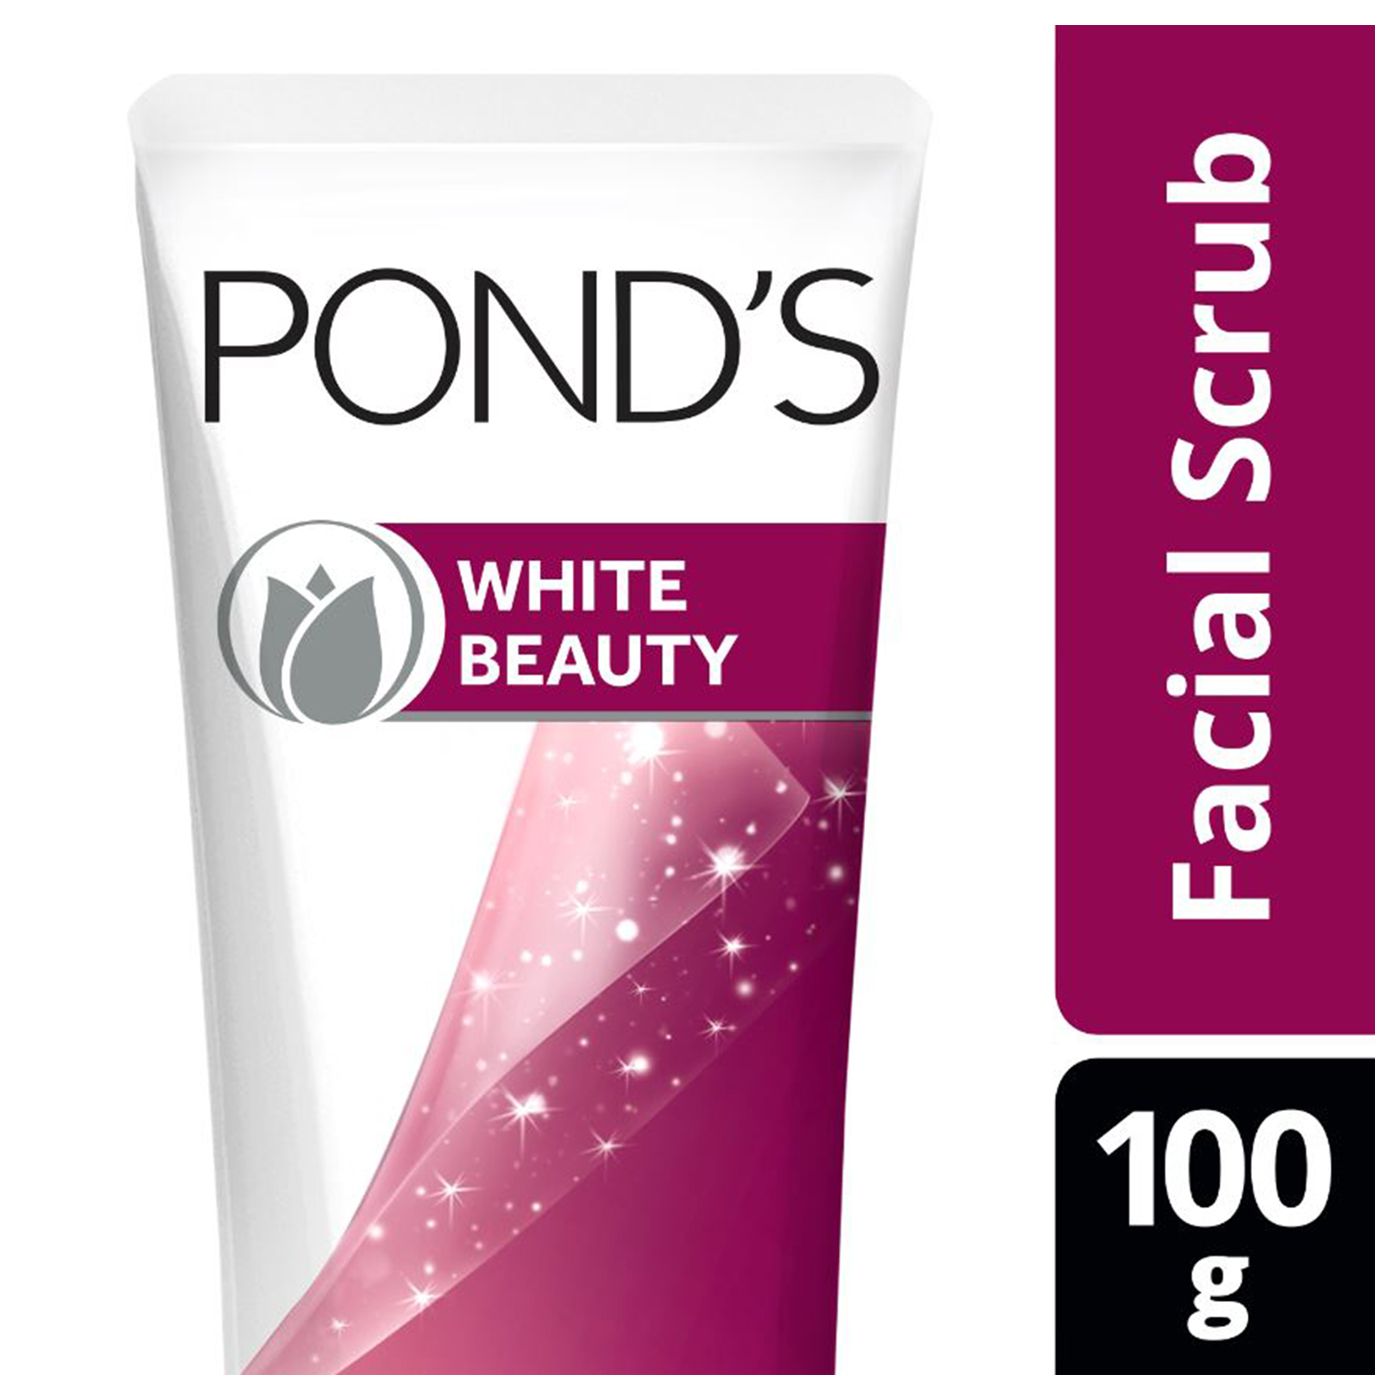 Pond'S White Beauty Sun Dullness Scrub Pembersih Wajah 100g - 1